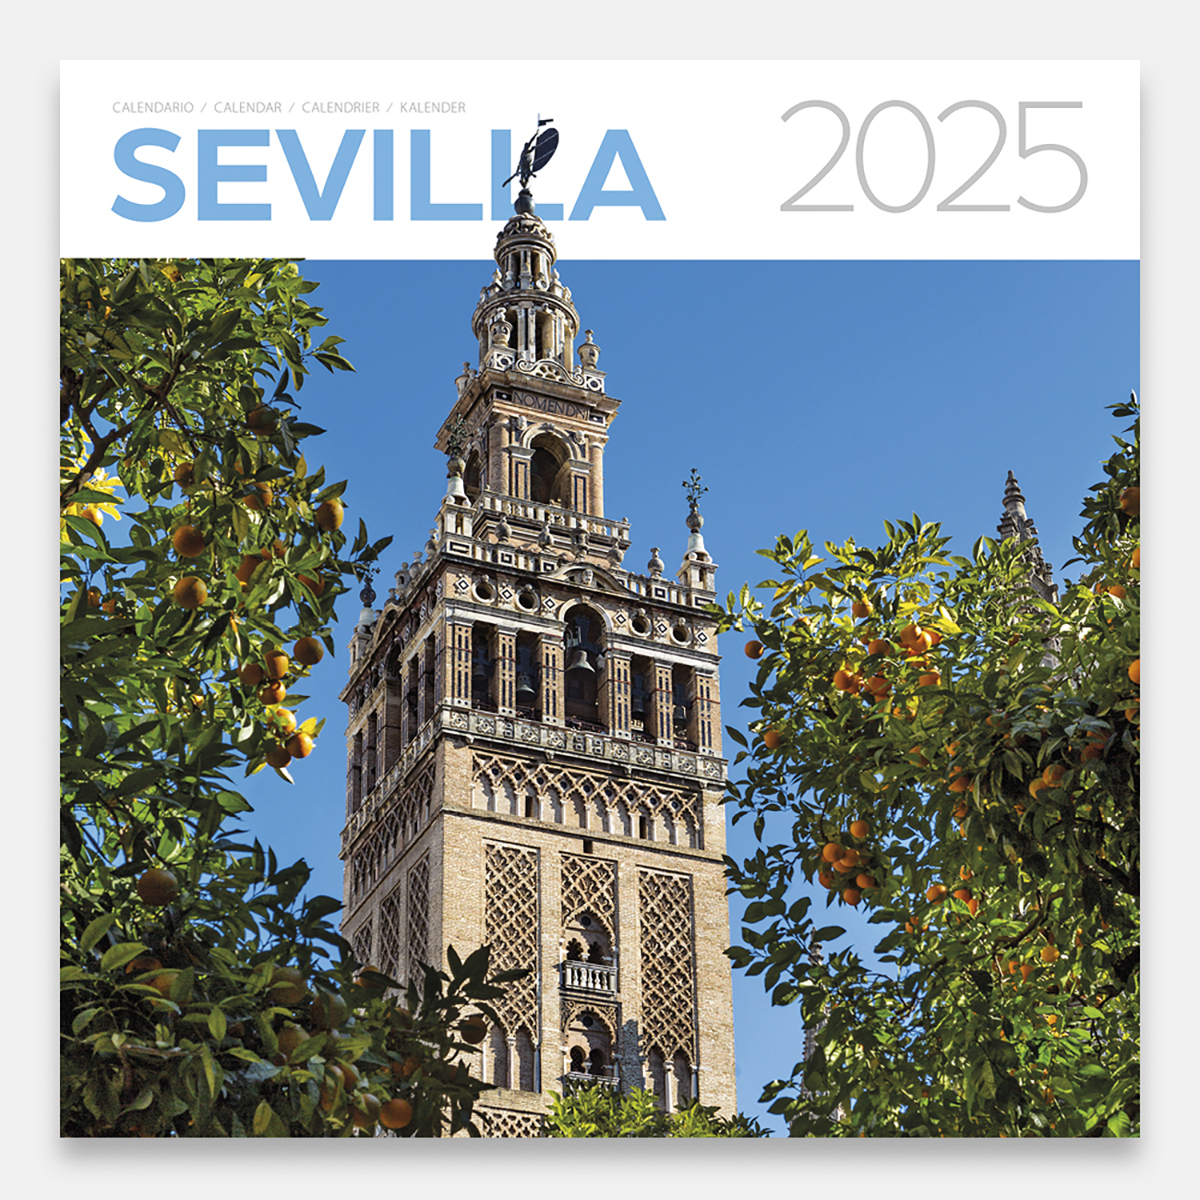 Calendar 2025 Sevilla 25sg calendario pared 2025 sevilla